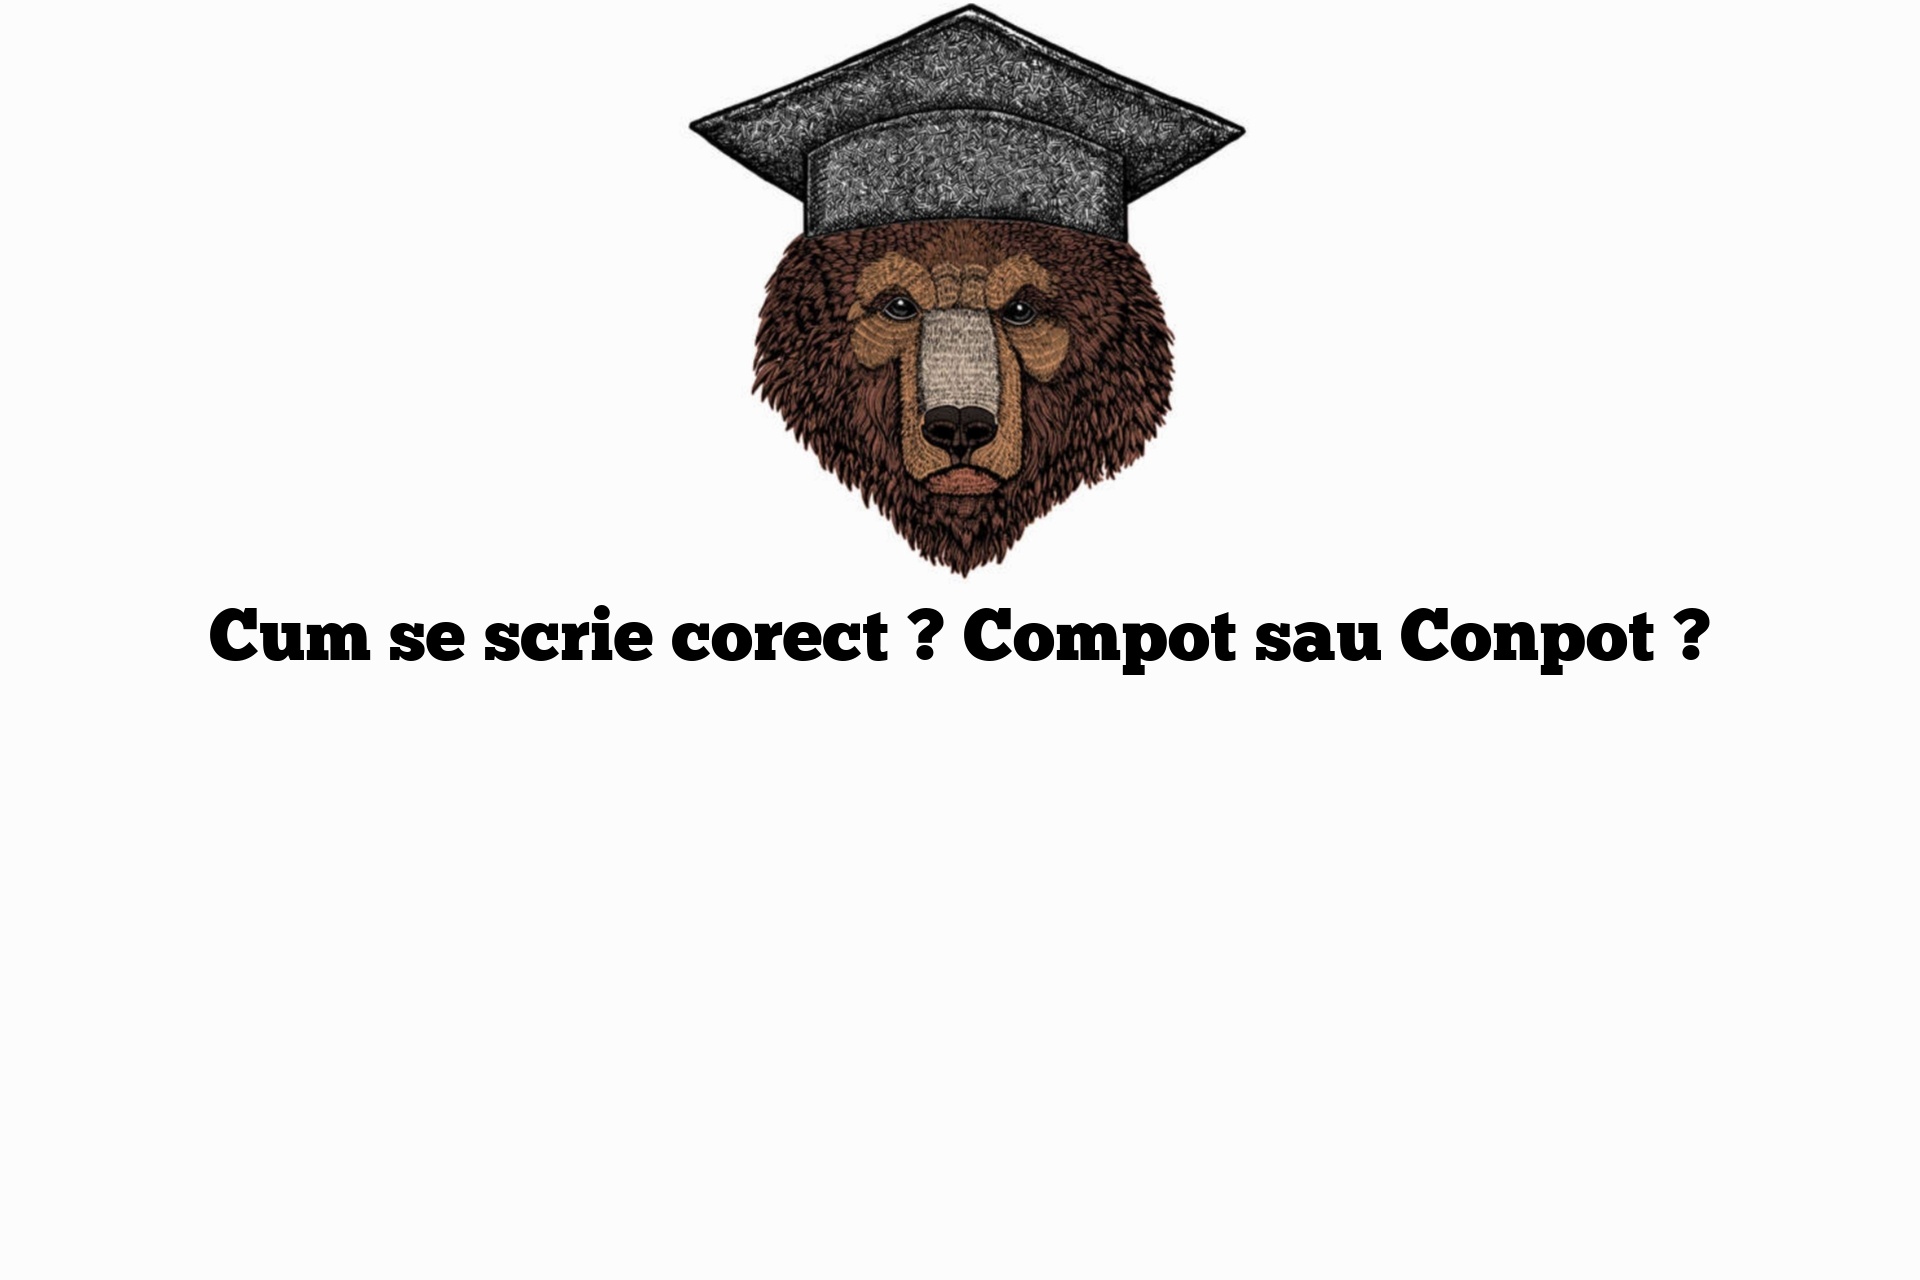 Cum se scrie corect ? Compot sau Conpot ?